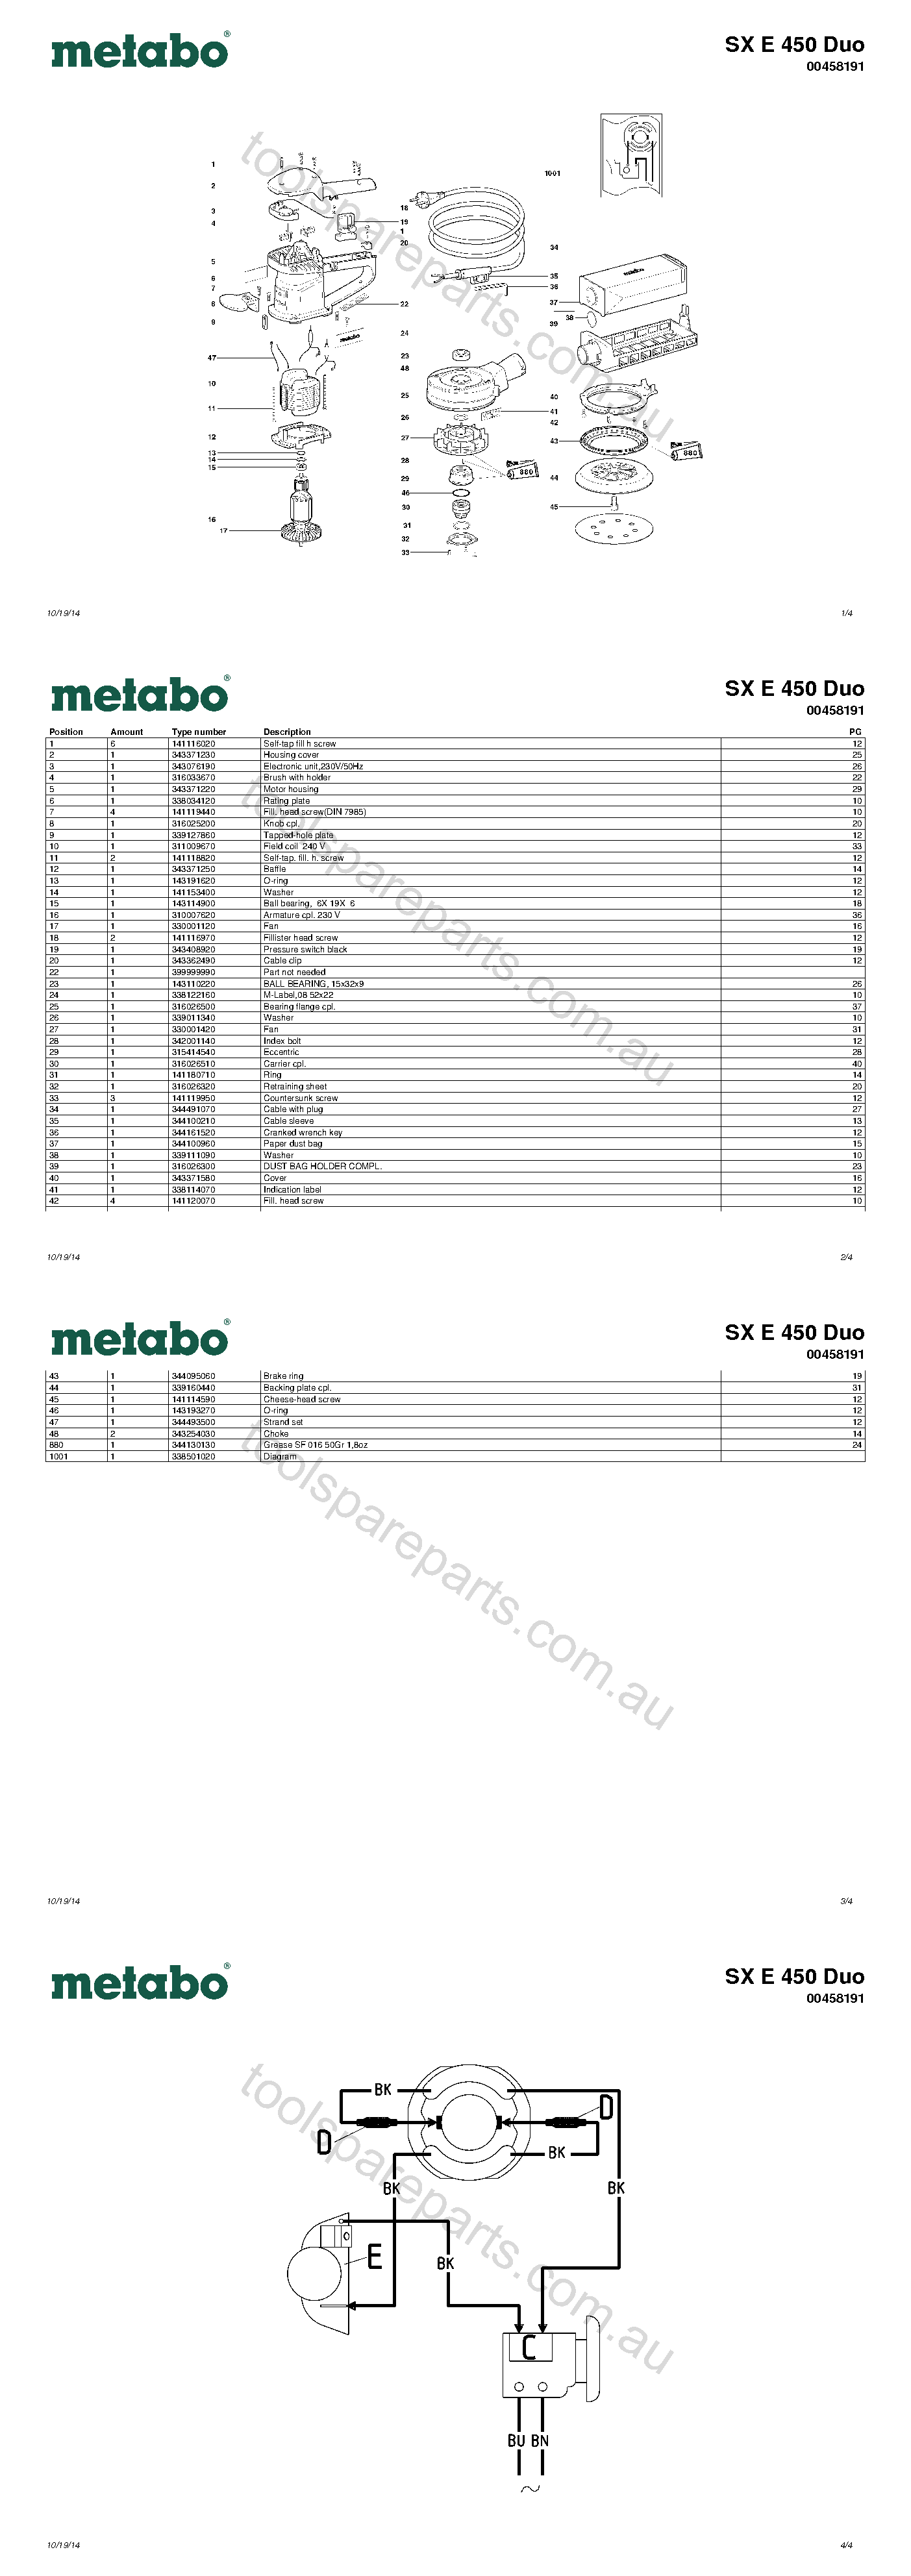 Metabo SX E 450 Duo 00458191  Diagram 1